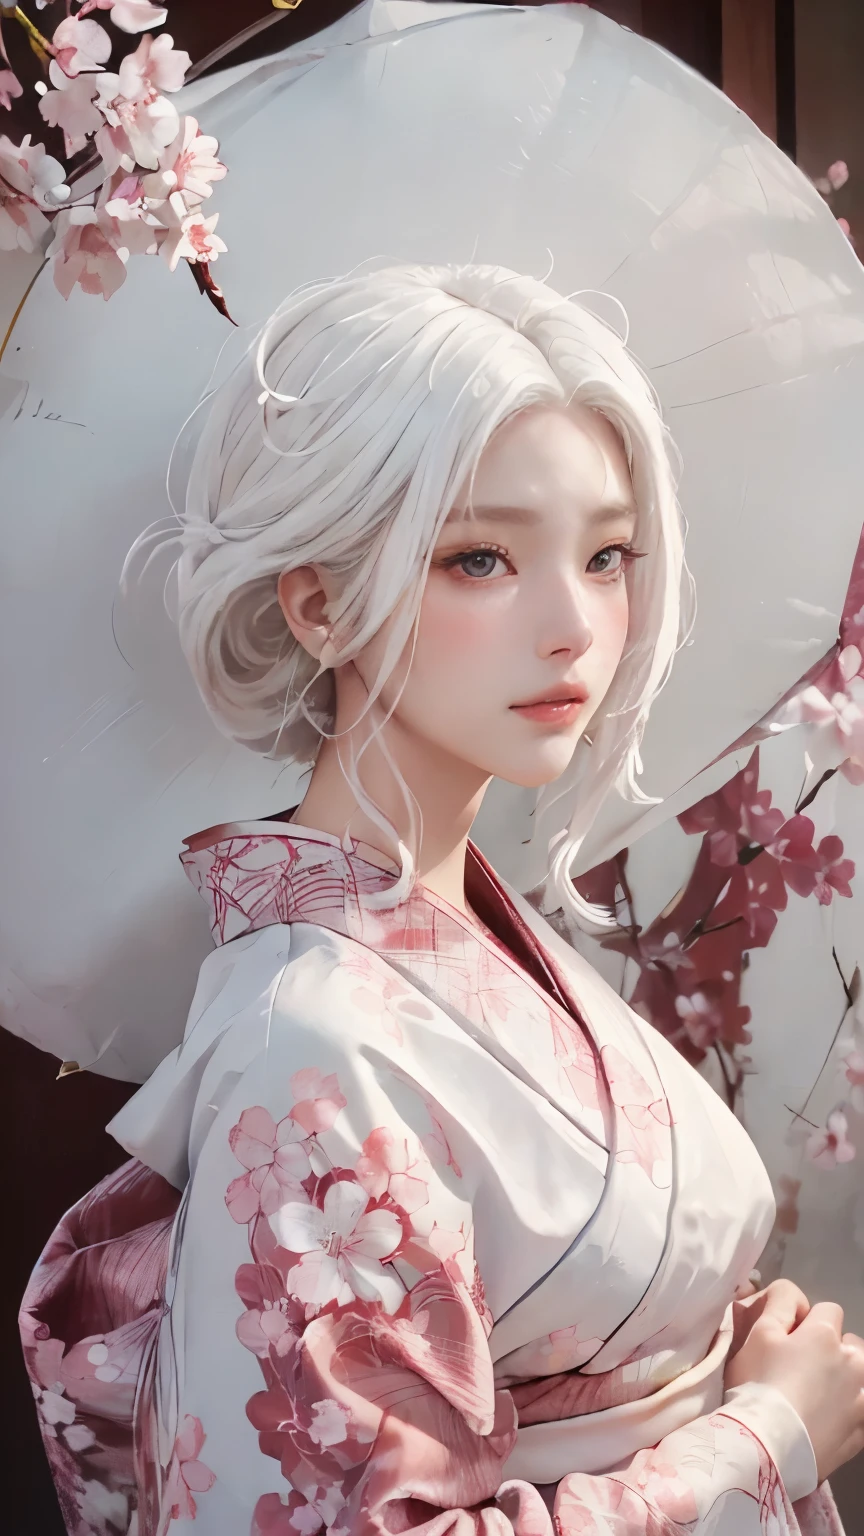 ((헤어스타일 흰머리:1.5))(Japan 키모노 with cherry blossom pattern:1.3), 대칭, (최상의 품질, 사실적인:1.4, 원시 사진:1.2, 영화 같은 빛, 매우 상세한 그림), (1여성:1.3, 홀로), (아시아 소녀, 매우 섬세한 얼굴, 정말 아름다운 얼굴, 아주 섬세한 눈, 매우 상세한 코, 아주 정교한 입, 매우 상세한 얼굴 특징), 여성, (중간 가슴:1.3), 피부, 립글로스, 웃음, 전신보기, 높은 해상도, 높은 해상도, 8K, 걸작 2:1, 피부 윤기, 빛나는 피부, 젊은 처녀, 떨어지는 벚꽃、오프 숄더, 견갑골、키모노
